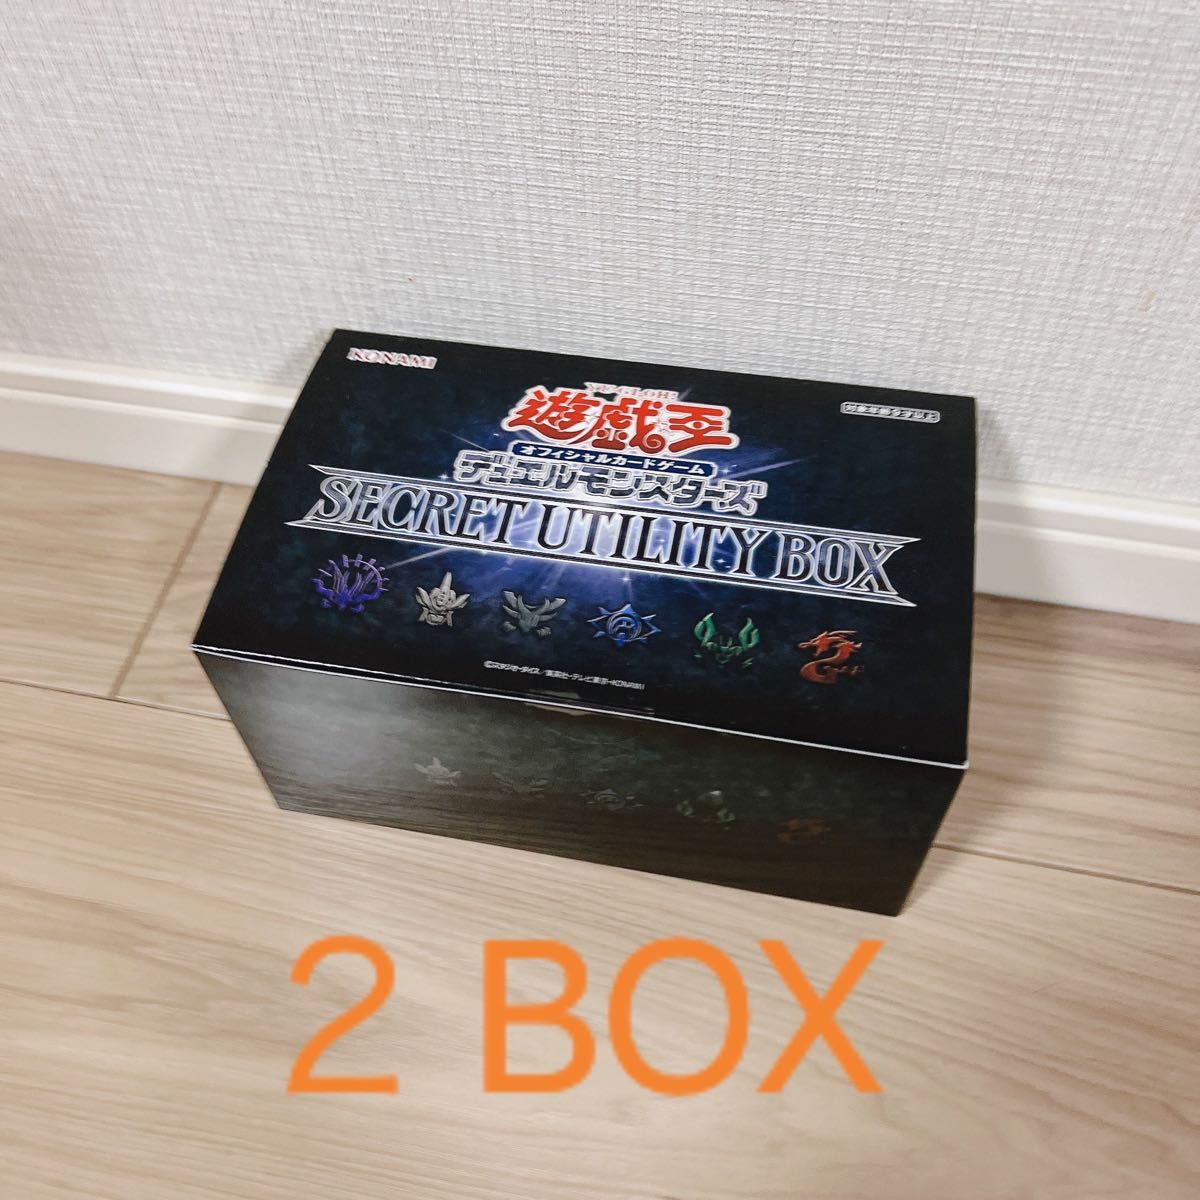 遊戯王 SECRET UTILITY BOX シークレットユーティリティボックス - 遊戯王